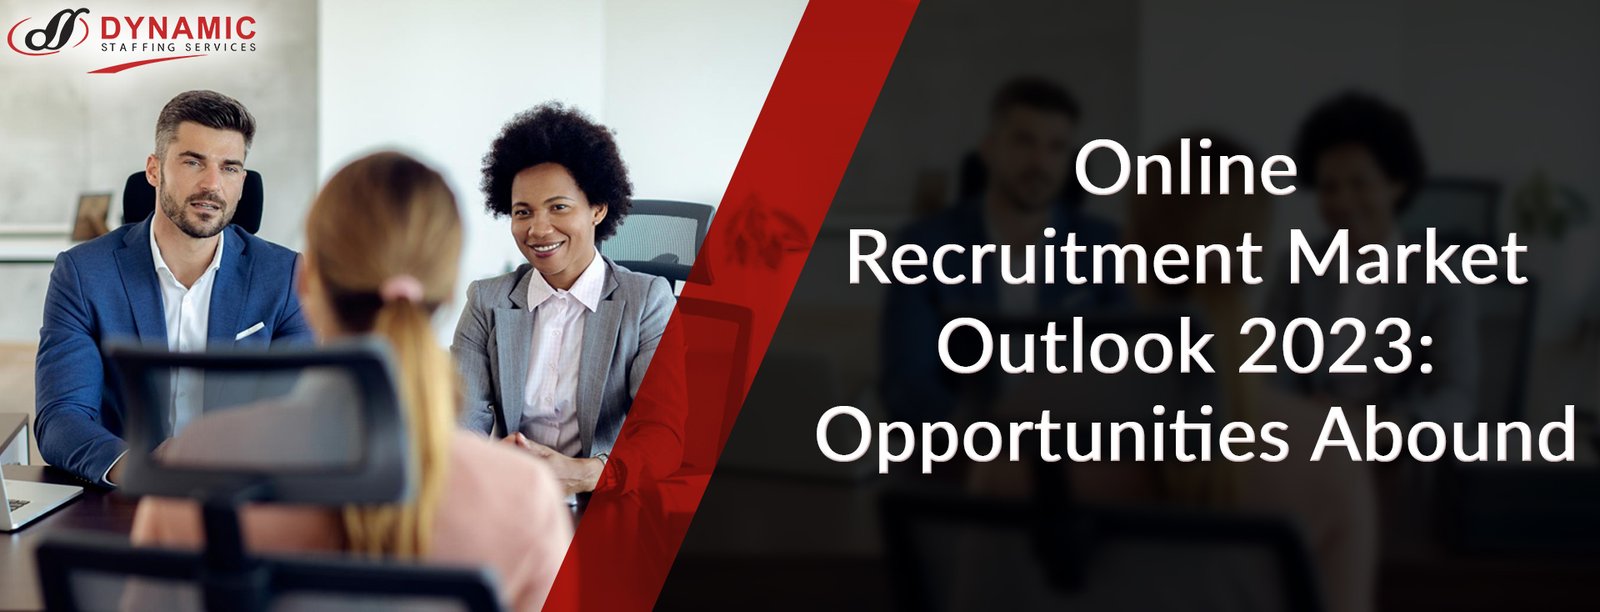 Online Recruitment Market Outlook 2023